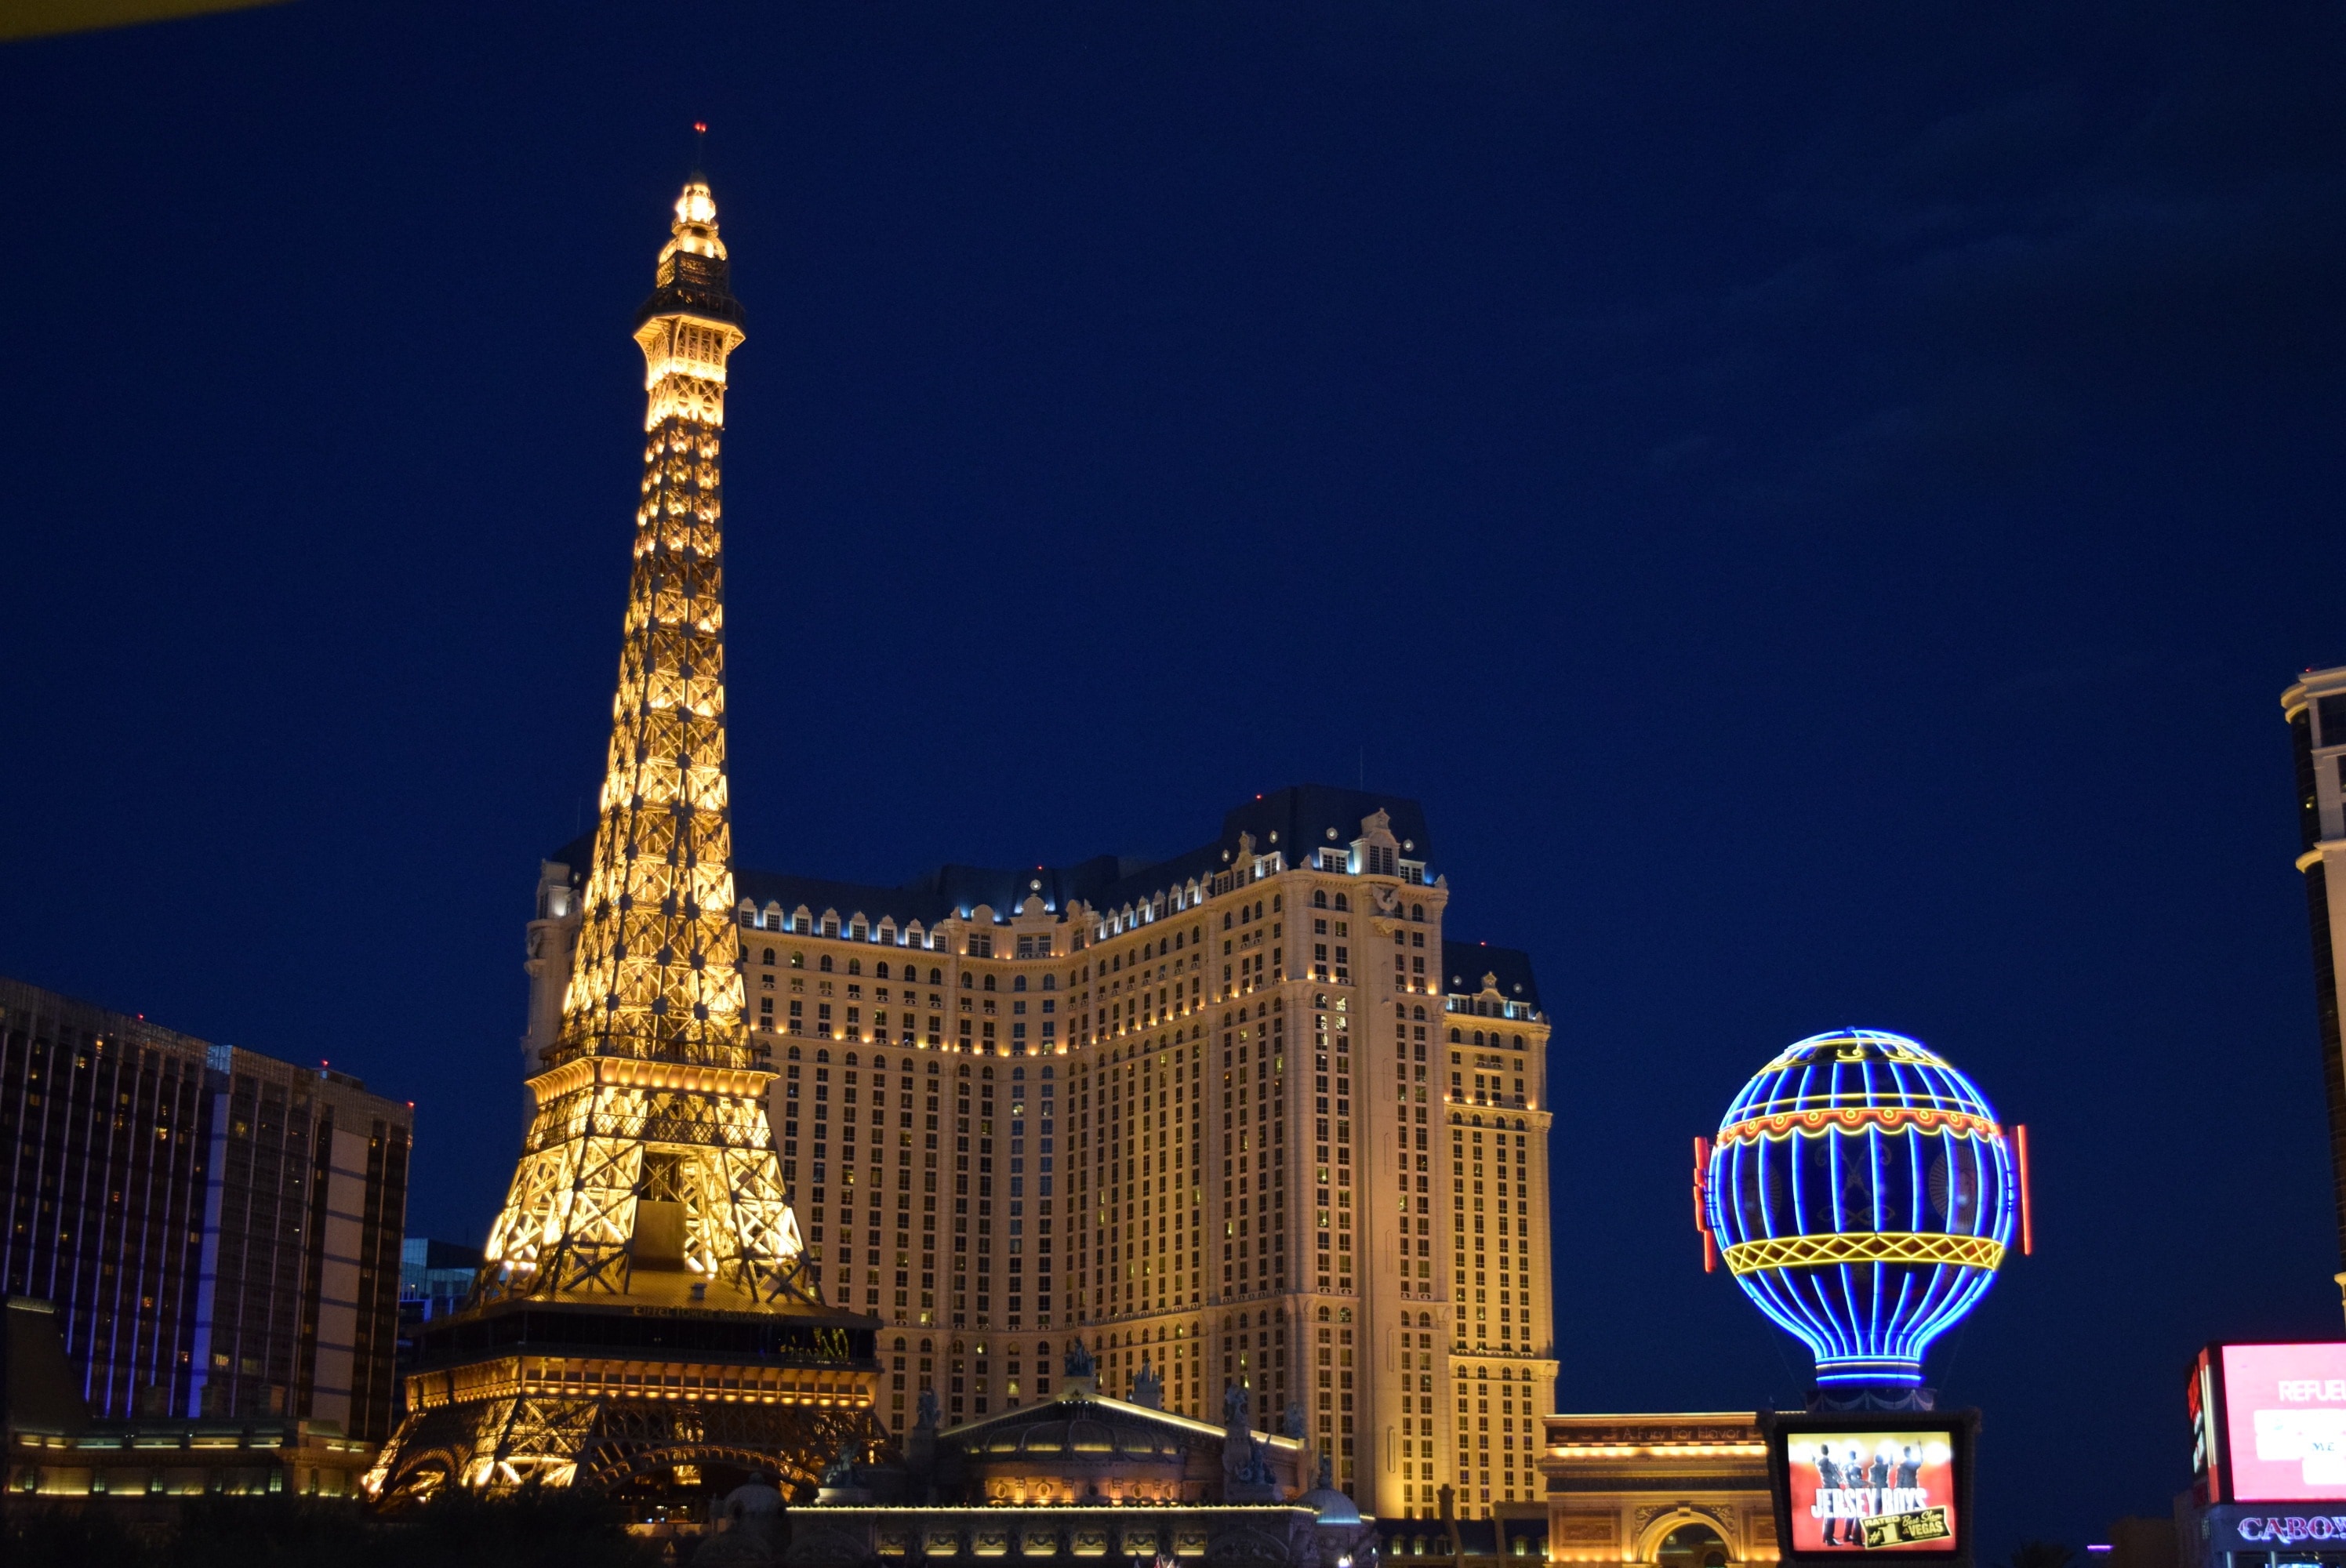 Hotel, Las Vegas, Paris, Night View, illuminated, night